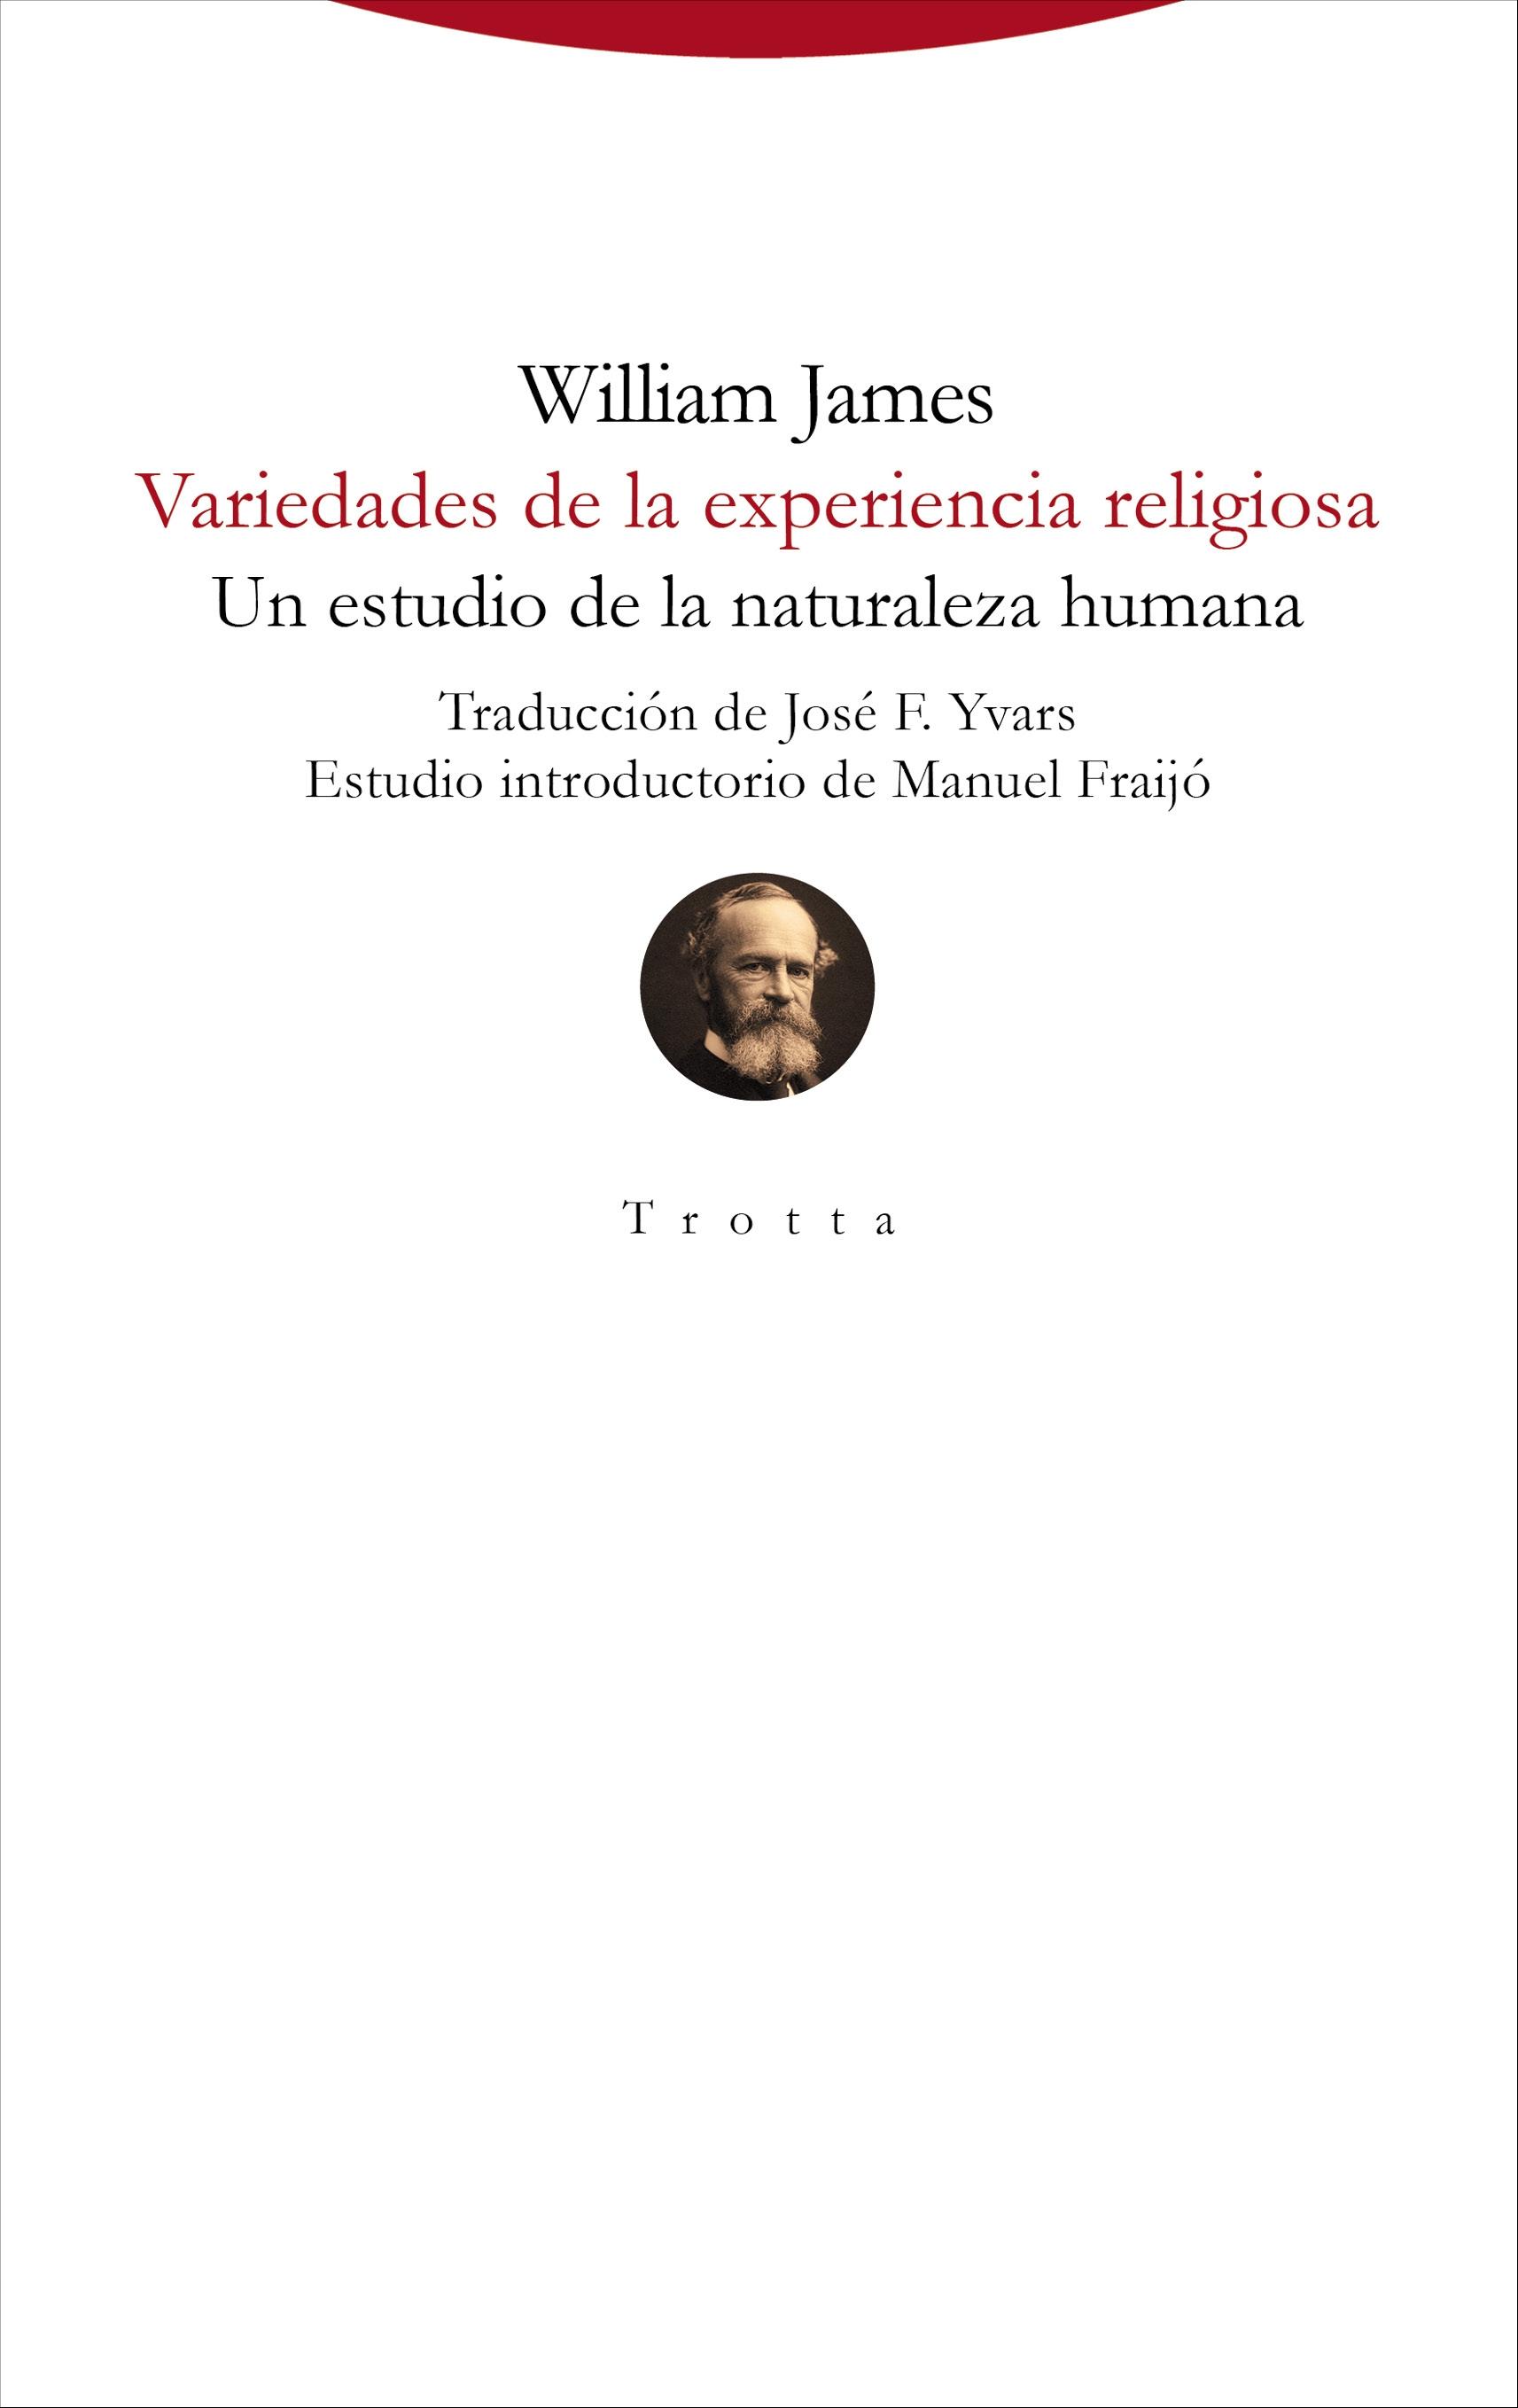 VARIEDADES DE LA EXPERIENCIA RELIGIOSA. "UN ESTUDIO DE LA NATURALEZA HUMANA"